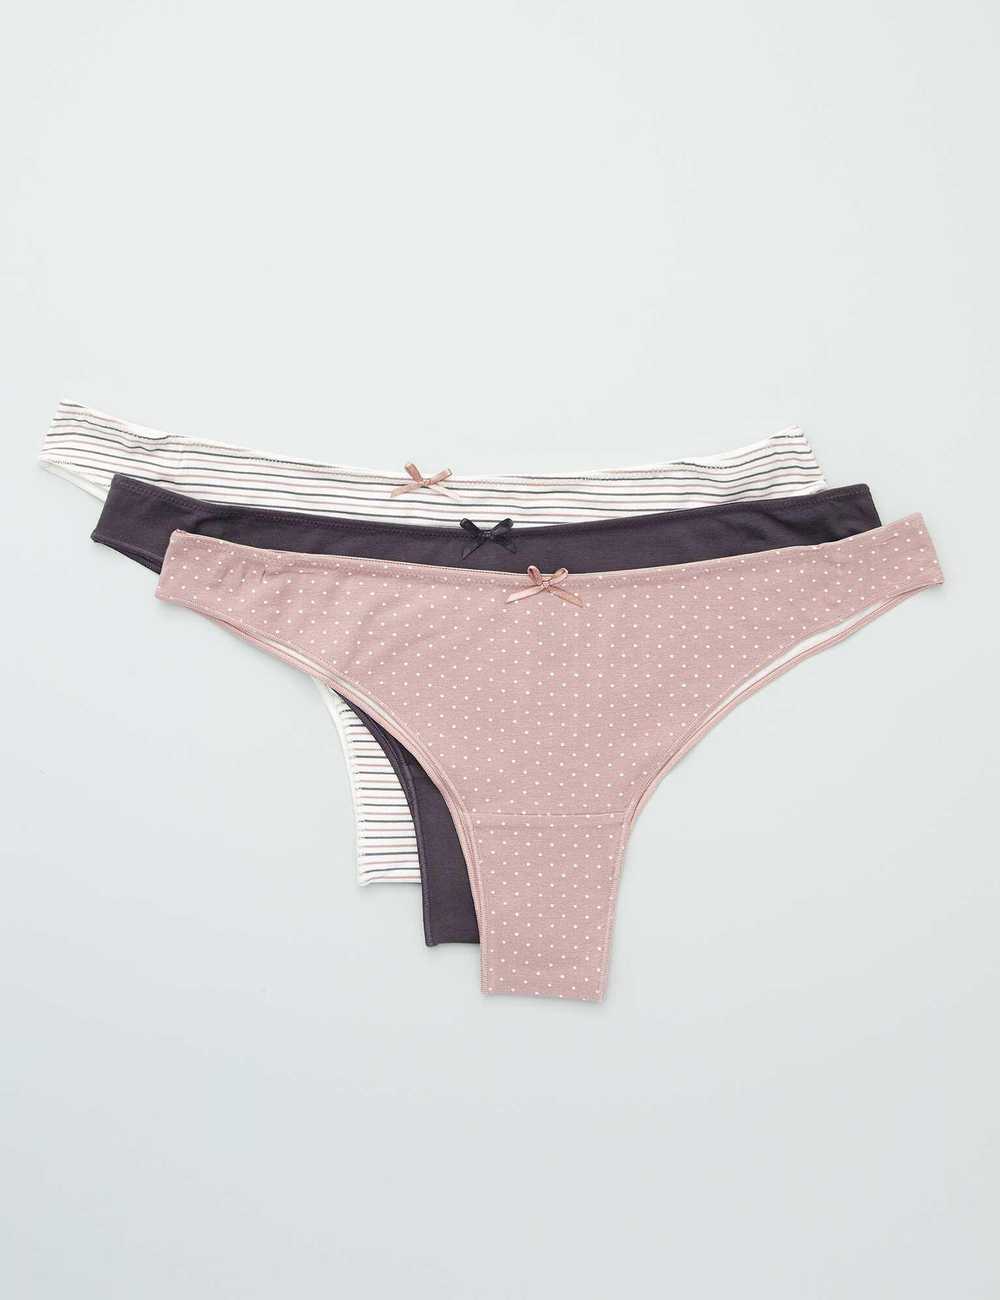 Buy Pink Cotton Boyshort Underwear online in Dubai